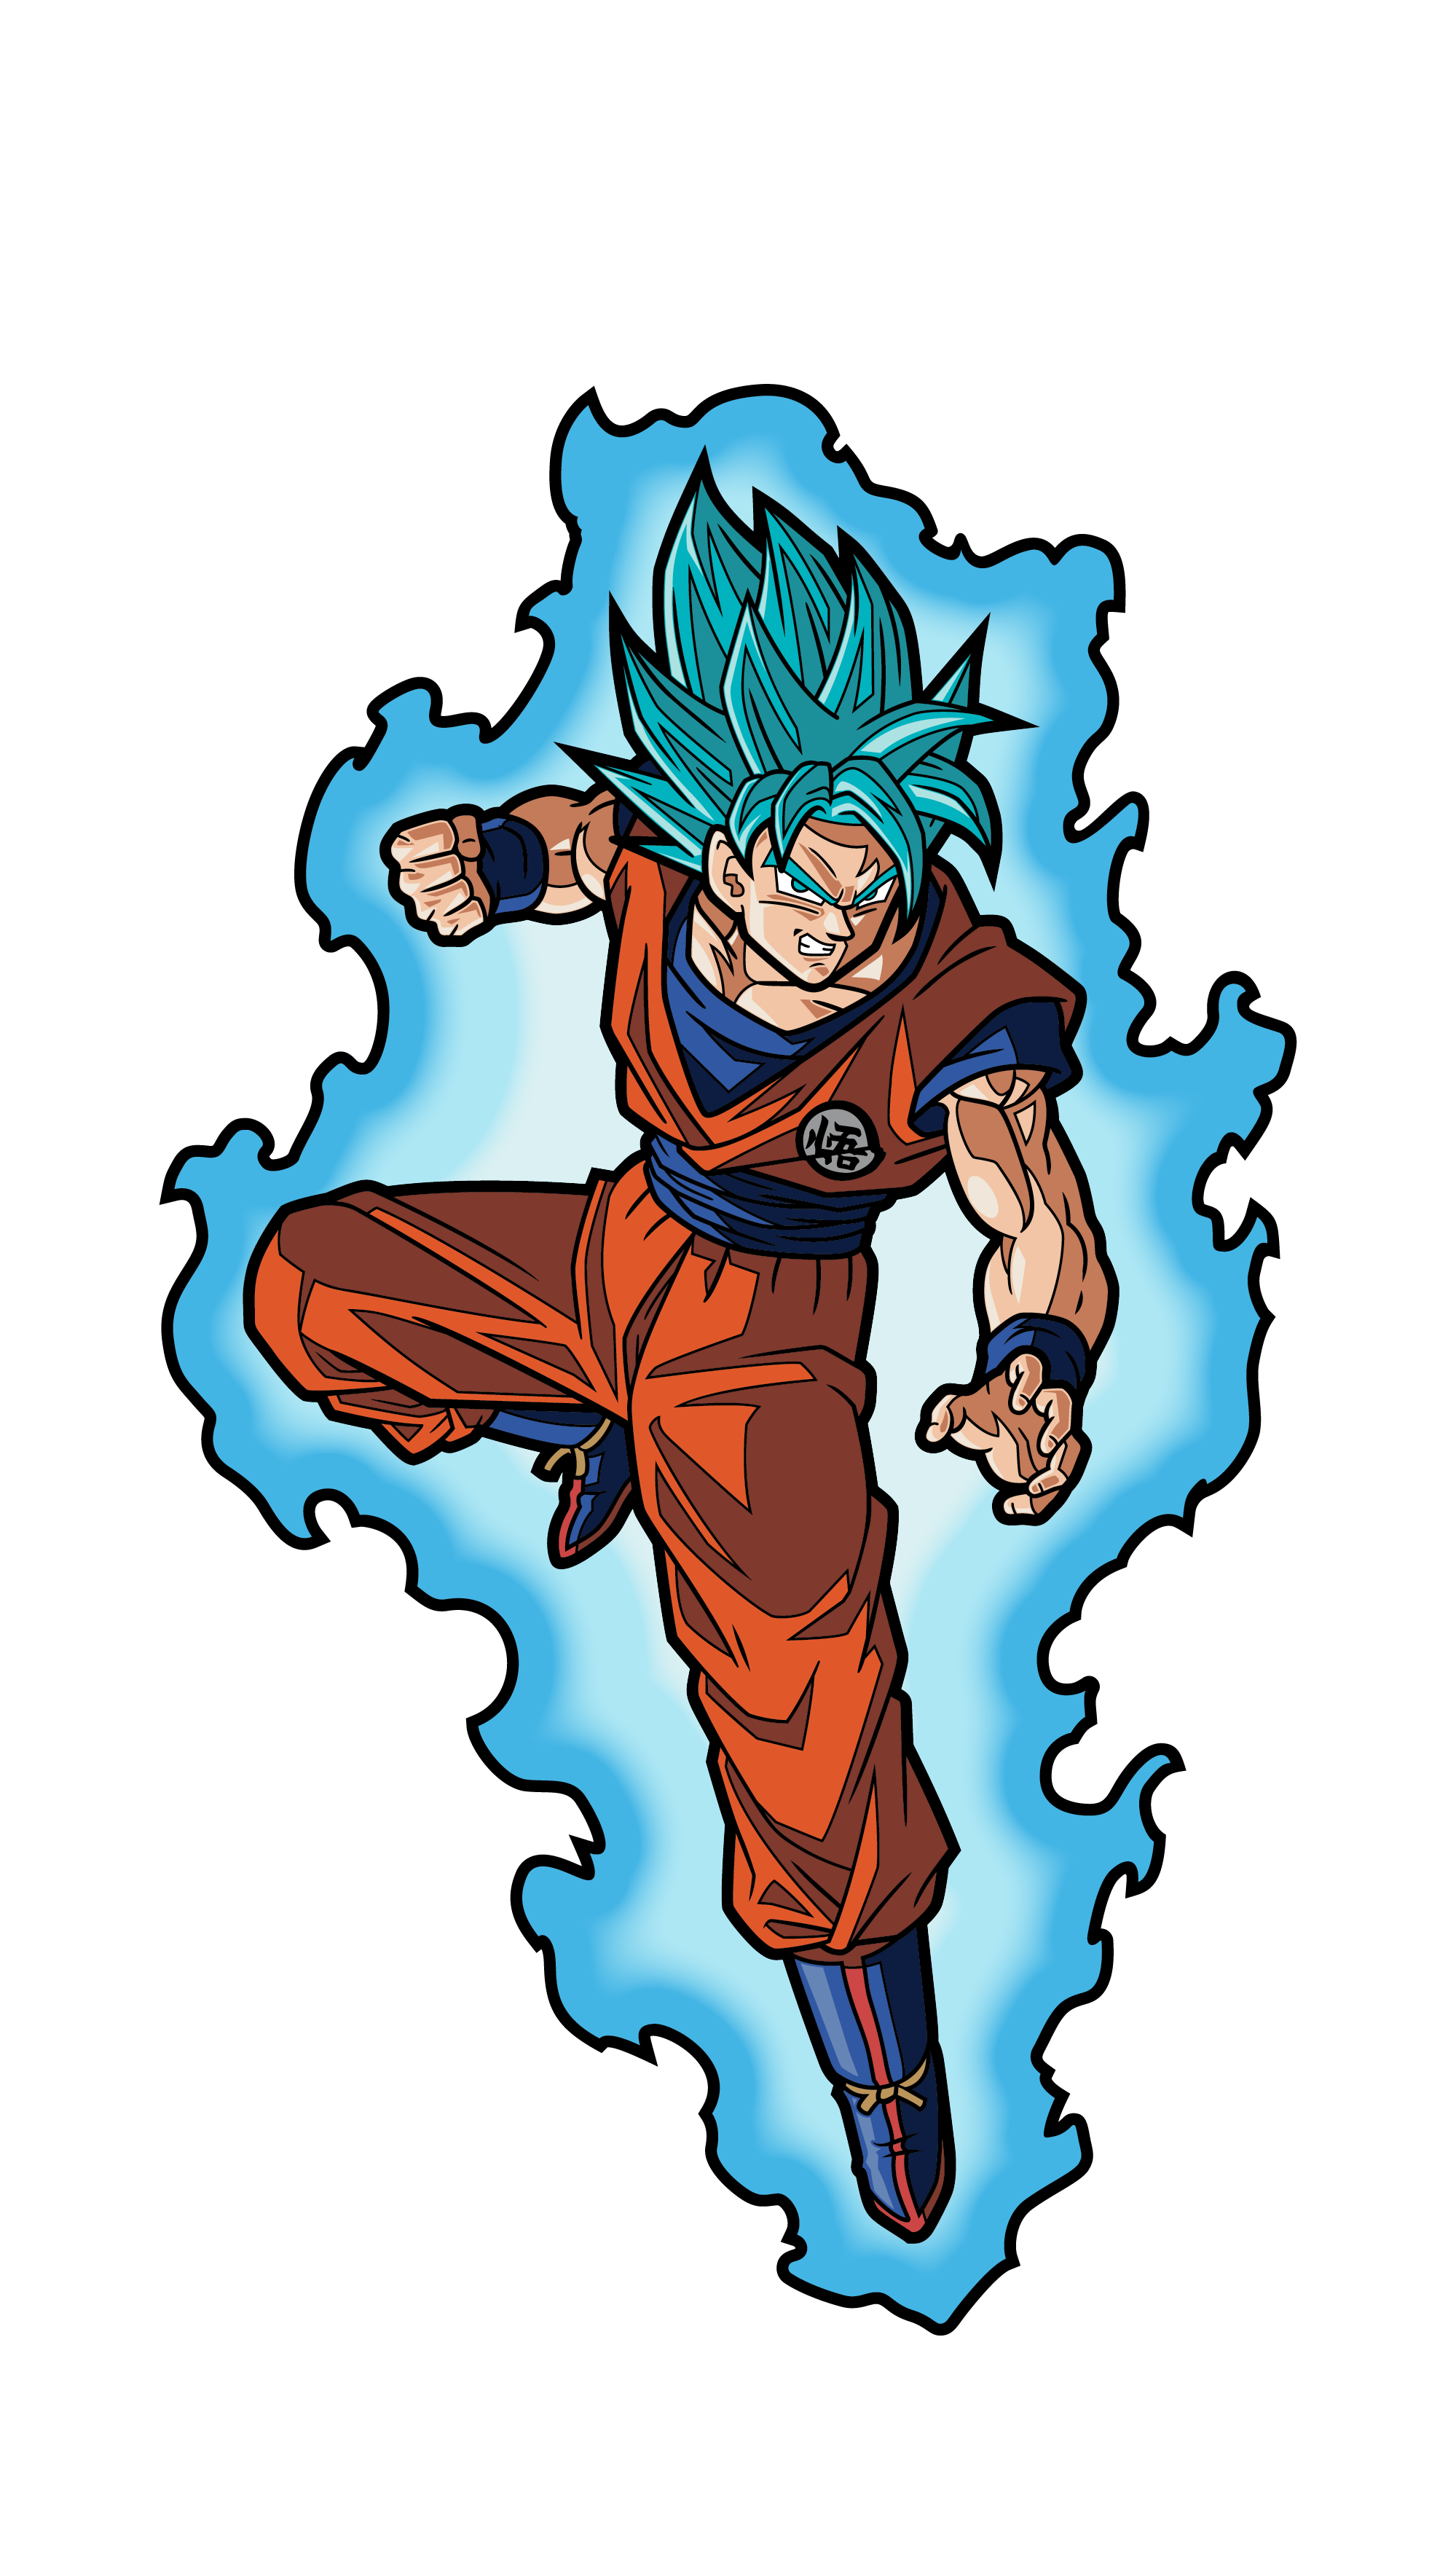 Super Saiyan God Super Saiyan Goku (1267) Dragon Ball Super